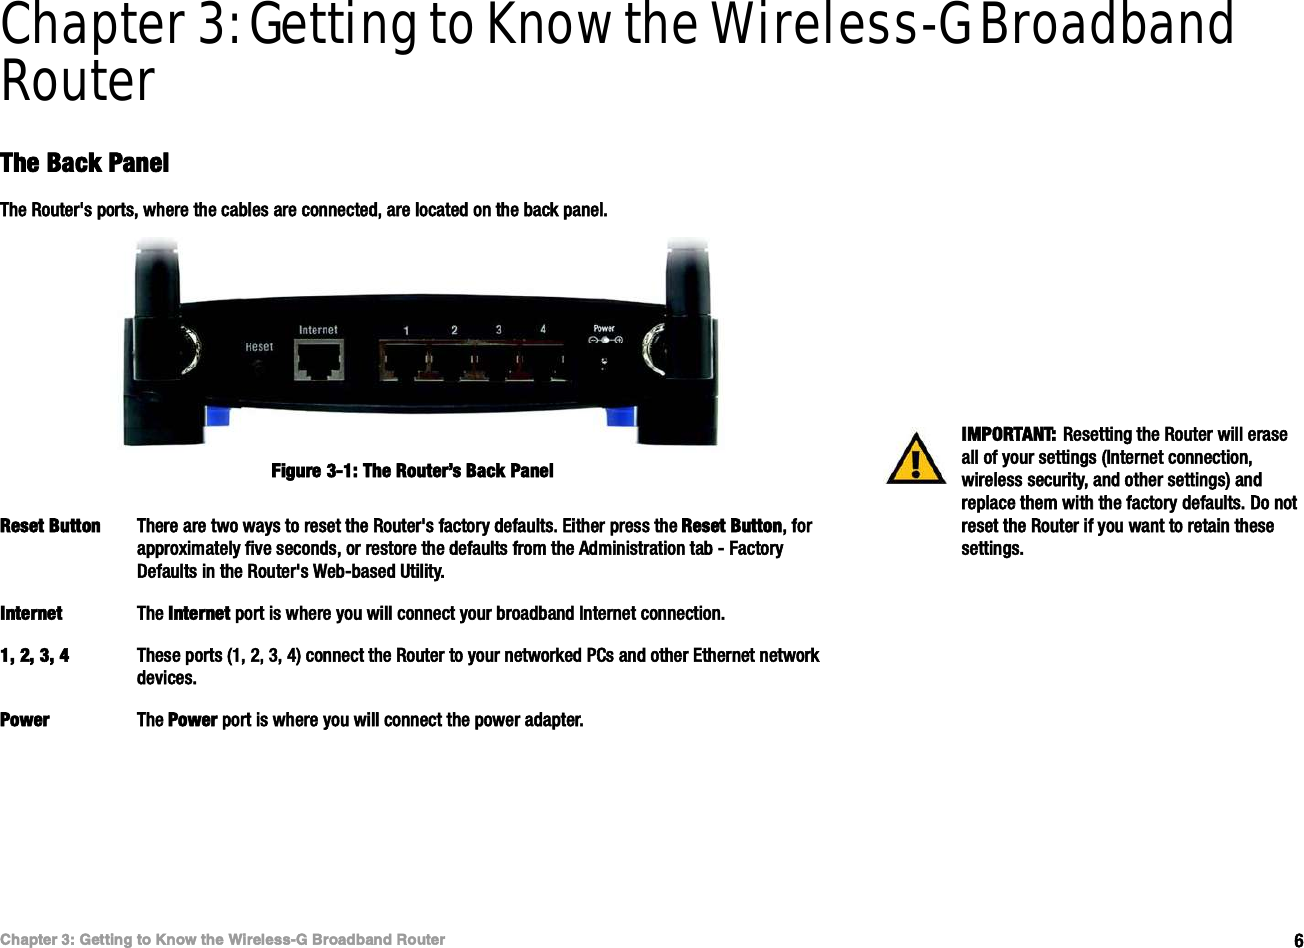 êÝ¸¿°¬»® íæ Ù»¬¬·²¹ ¬± Õ²±© ¬¸» É·®»´»--óÙ Þ®±¿¼¾¿²¼ Î±«¬»®Ì¸» Þ¿½µ Ð¿²»´É·®»´»--óÙ Þ®±¿¼¾¿²¼ Î±«¬»®Chapter 3: Getting to Know the Wireless-G Broadband RouterÌ¸» Þ¿½µ Ð¿²»´Ì¸» Î±«¬»®ù- °±®¬-ô ©¸»®» ¬¸» ½¿¾´»- ¿®» ½±²²»½¬»¼ô ¿®» ´±½¿¬»¼ ±² ¬¸» ¾¿½µ °¿²»´òÎ»-»¬ Þ«¬¬±² Ì¸»®» ¿®» ¬©± ©¿§- ¬± ®»-»¬ ¬¸» Î±«¬»®ù- º¿½¬±®§ ¼»º¿«´¬-ò Û·¬¸»® °®»-- ¬¸» Î»-»¬ Þ«¬¬±²ô º±® ¿°°®±¨·³¿¬»´§ º·ª» -»½±²¼-ô ±® ®»-¬±®» ¬¸» ¼»º¿«´¬- º®±³ ¬¸» ß¼³·²·-¬®¿¬·±² ¬¿¾ ó Ú¿½¬±®§ Ü»º¿«´¬- ·² ¬¸» Î±«¬»®ù- É»¾ó¾¿-»¼ Ë¬·´·¬§ò×²¬»®²»¬ Ì¸» ×²¬»®²»¬ °±®¬ ·- ©¸»®» §±« ©·´´ ½±²²»½¬ §±«® ¾®±¿¼¾¿²¼ ×²¬»®²»¬ ½±²²»½¬·±²òïô îô íô ì Ì¸»-» °±®¬- øïô îô íô ì÷ ½±²²»½¬ ¬¸» Î±«¬»® ¬± §±«® ²»¬©±®µ»¼ ÐÝ- ¿²¼ ±¬¸»® Û¬¸»®²»¬ ²»¬©±®µ ¼»ª·½»-òÐ±©»® Ì¸» Ð±©»® °±®¬ ·- ©¸»®» §±« ©·´´ ½±²²»½¬ ¬¸» °±©»® ¿¼¿°¬»®ò×ÓÐÑÎÌßÒÌæ Î»-»¬¬·²¹ ¬¸» Î±«¬»® ©·´´ »®¿-» ¿´´ ±º §±«® -»¬¬·²¹- ø×²¬»®²»¬ ½±²²»½¬·±²ô ©·®»´»-- -»½«®·¬§ô ¿²¼ ±¬¸»® -»¬¬·²¹-÷ ¿²¼ ®»°´¿½» ¬¸»³ ©·¬¸ ¬¸» º¿½¬±®§ ¼»º¿«´¬-ò Ü± ²±¬ ®»-»¬ ¬¸» Î±«¬»® ·º §±« ©¿²¬ ¬± ®»¬¿·² ¬¸»-» -»¬¬·²¹-òÚ·¹«®» íóïæ Ì¸» Î±«¬»®Ž- Þ¿½µ Ð¿²»´